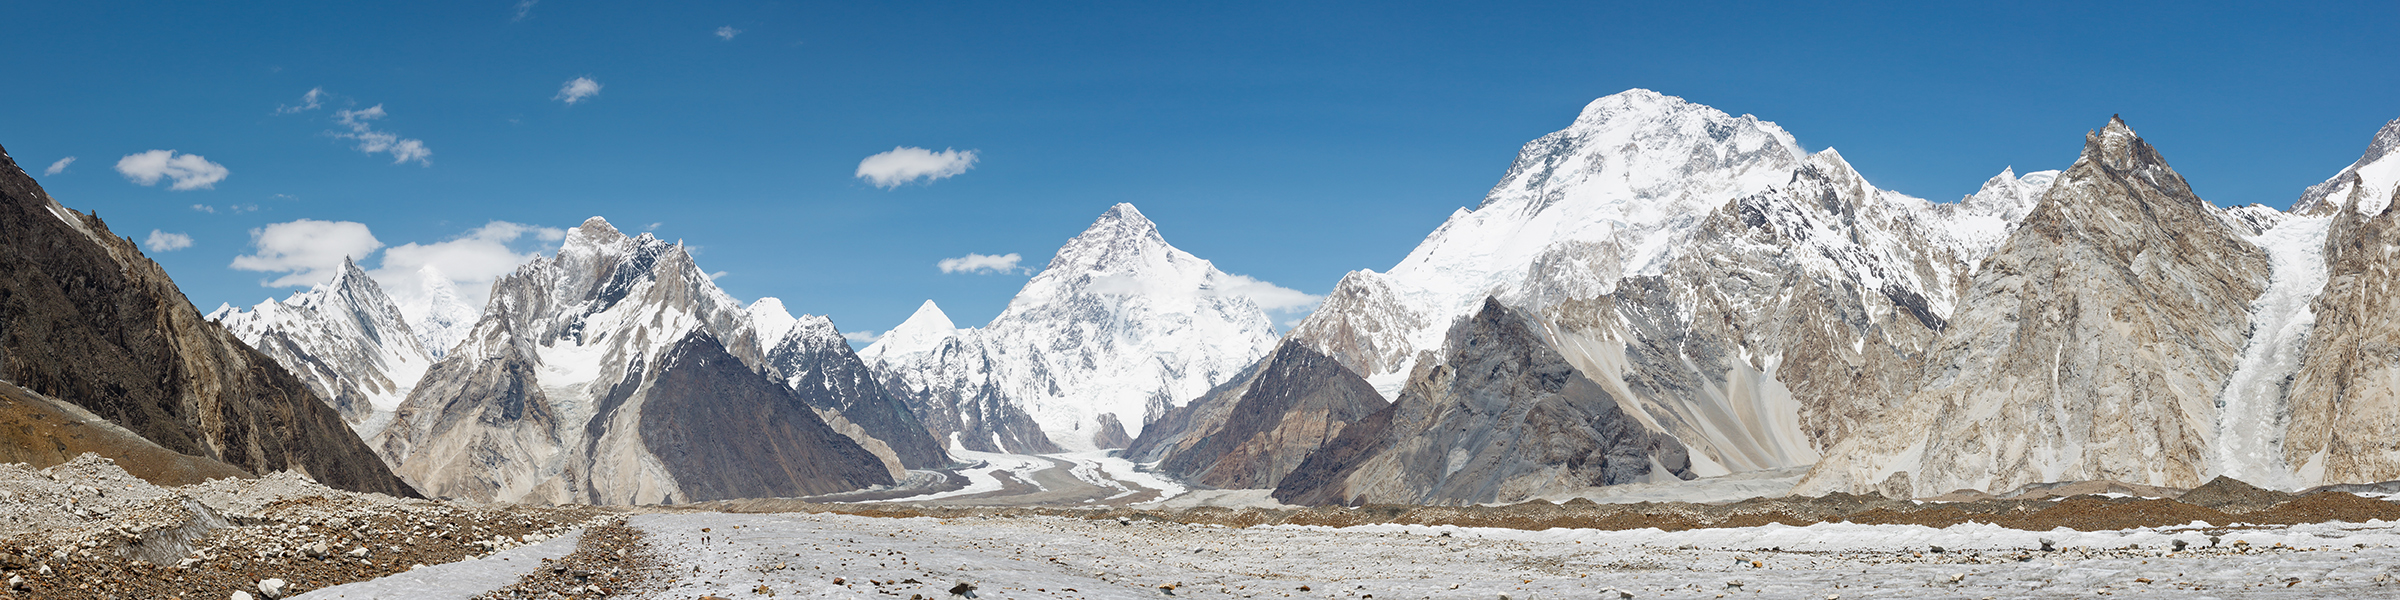 Pakistan Karakoram Baltoro Glacier K2 